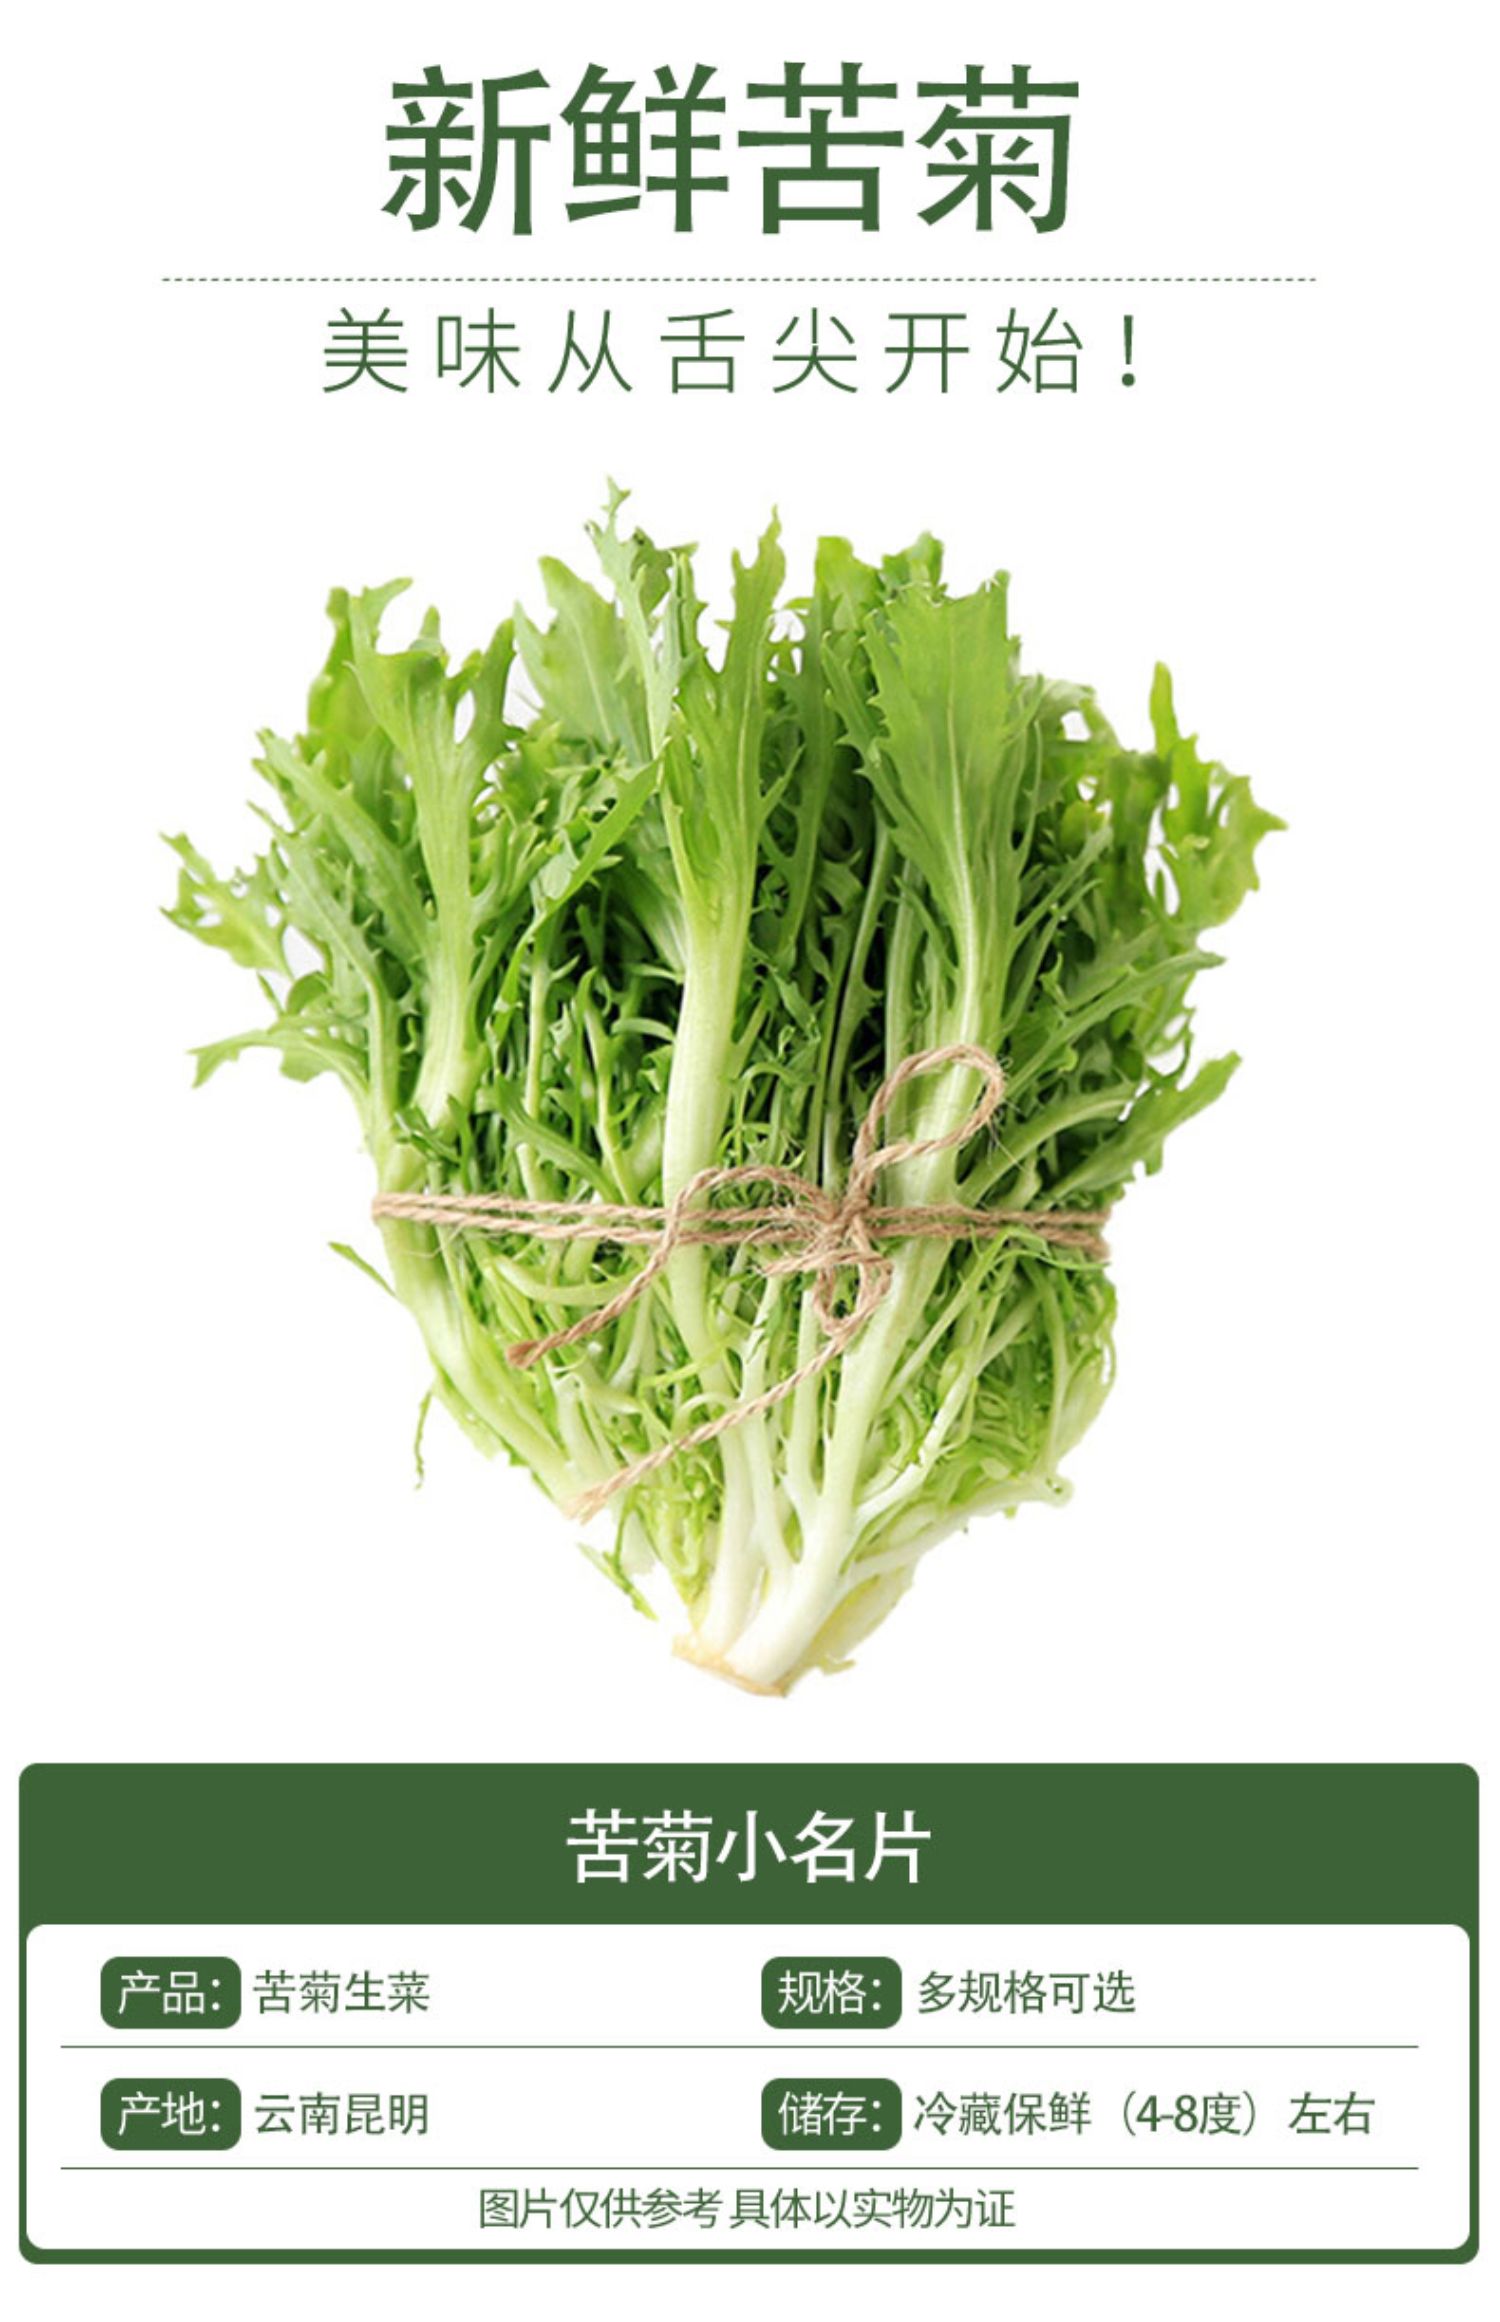 【顺丰发货】苦菊新鲜苦苣细叶健身轻食生菜沙拉食材1500g即食蔬菜